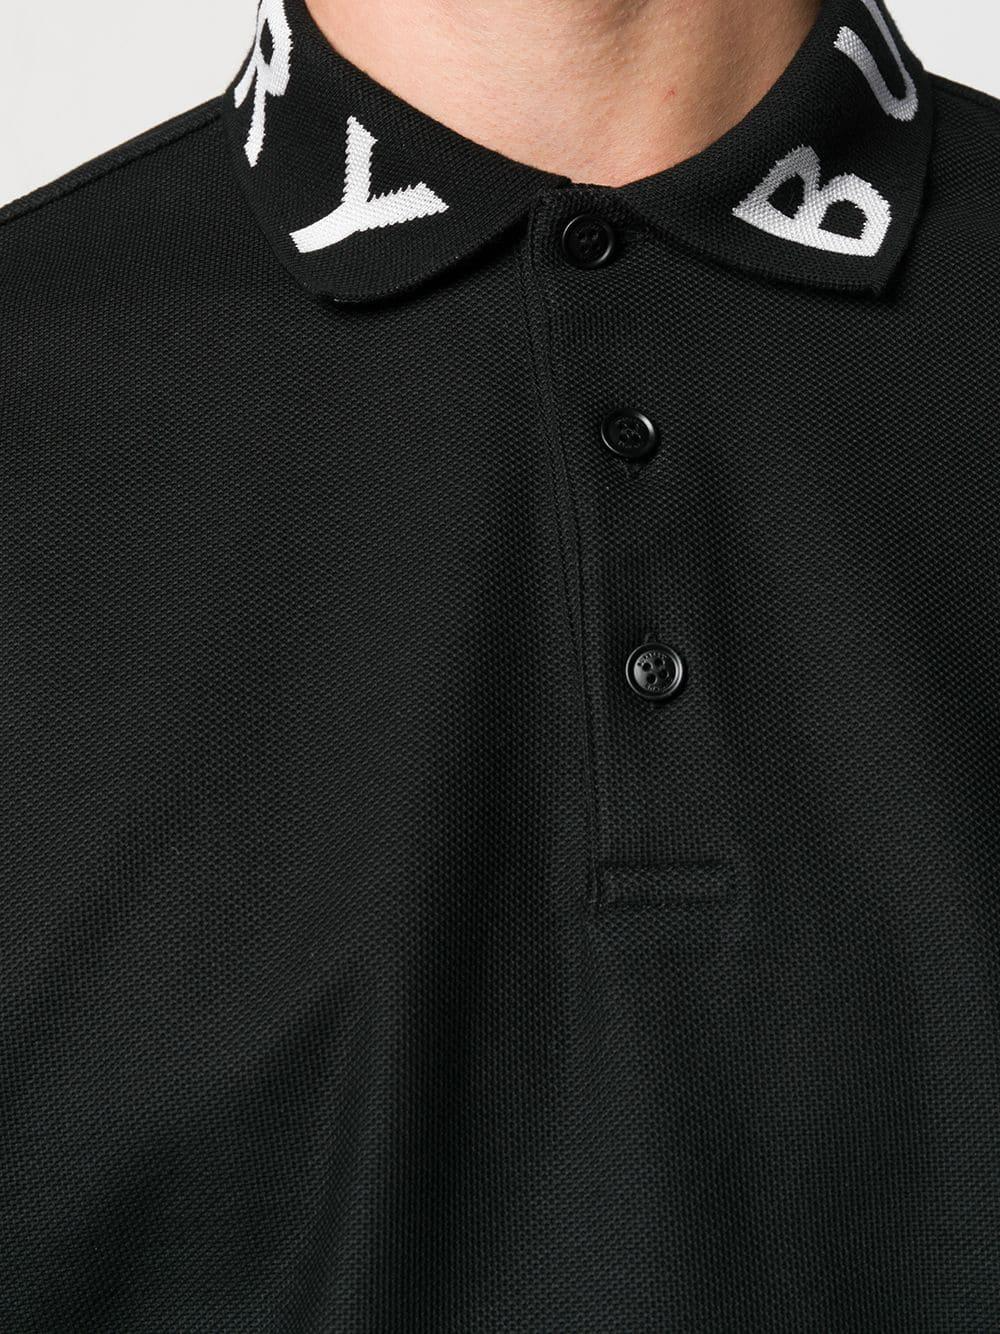 Burberry Collar Logo Polo Black